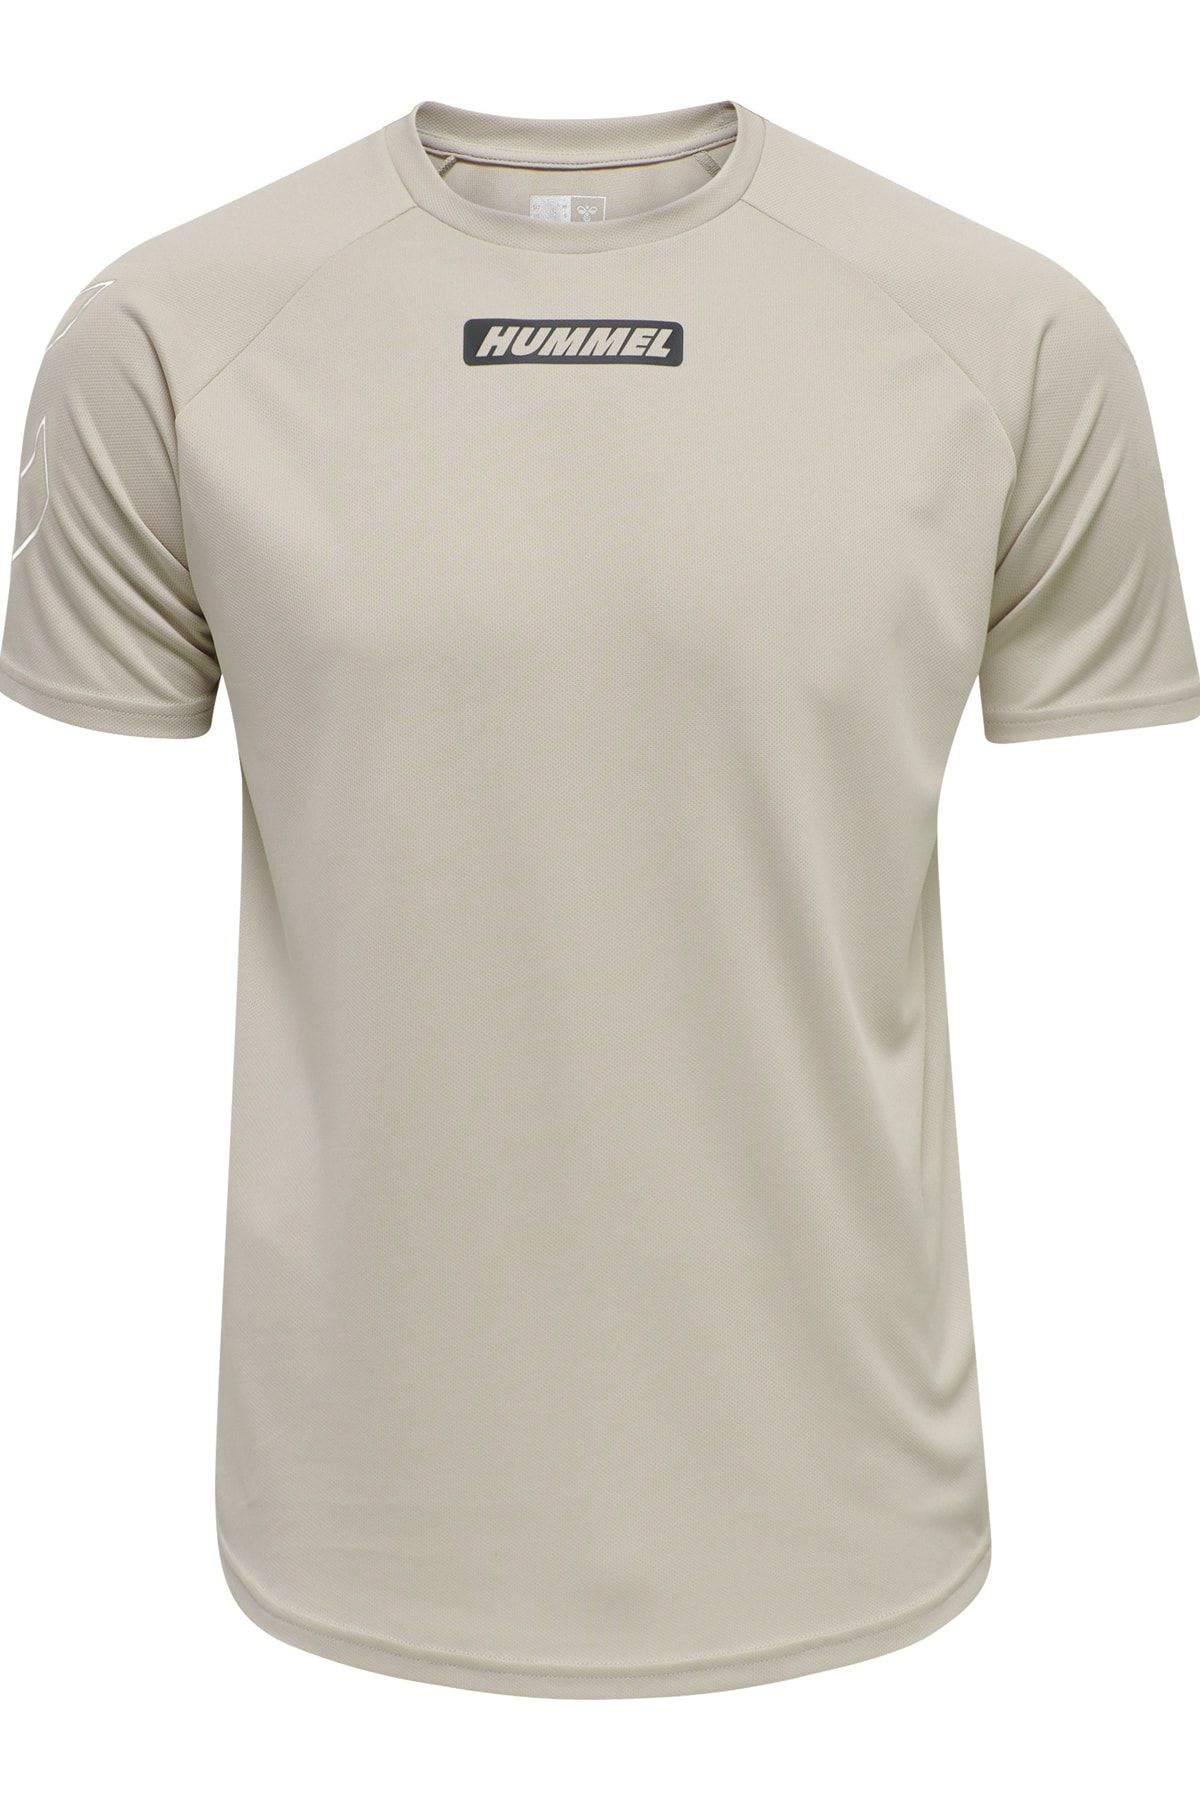 HUMMEL T-Shirt - Beige - Regular fit - Trendyol